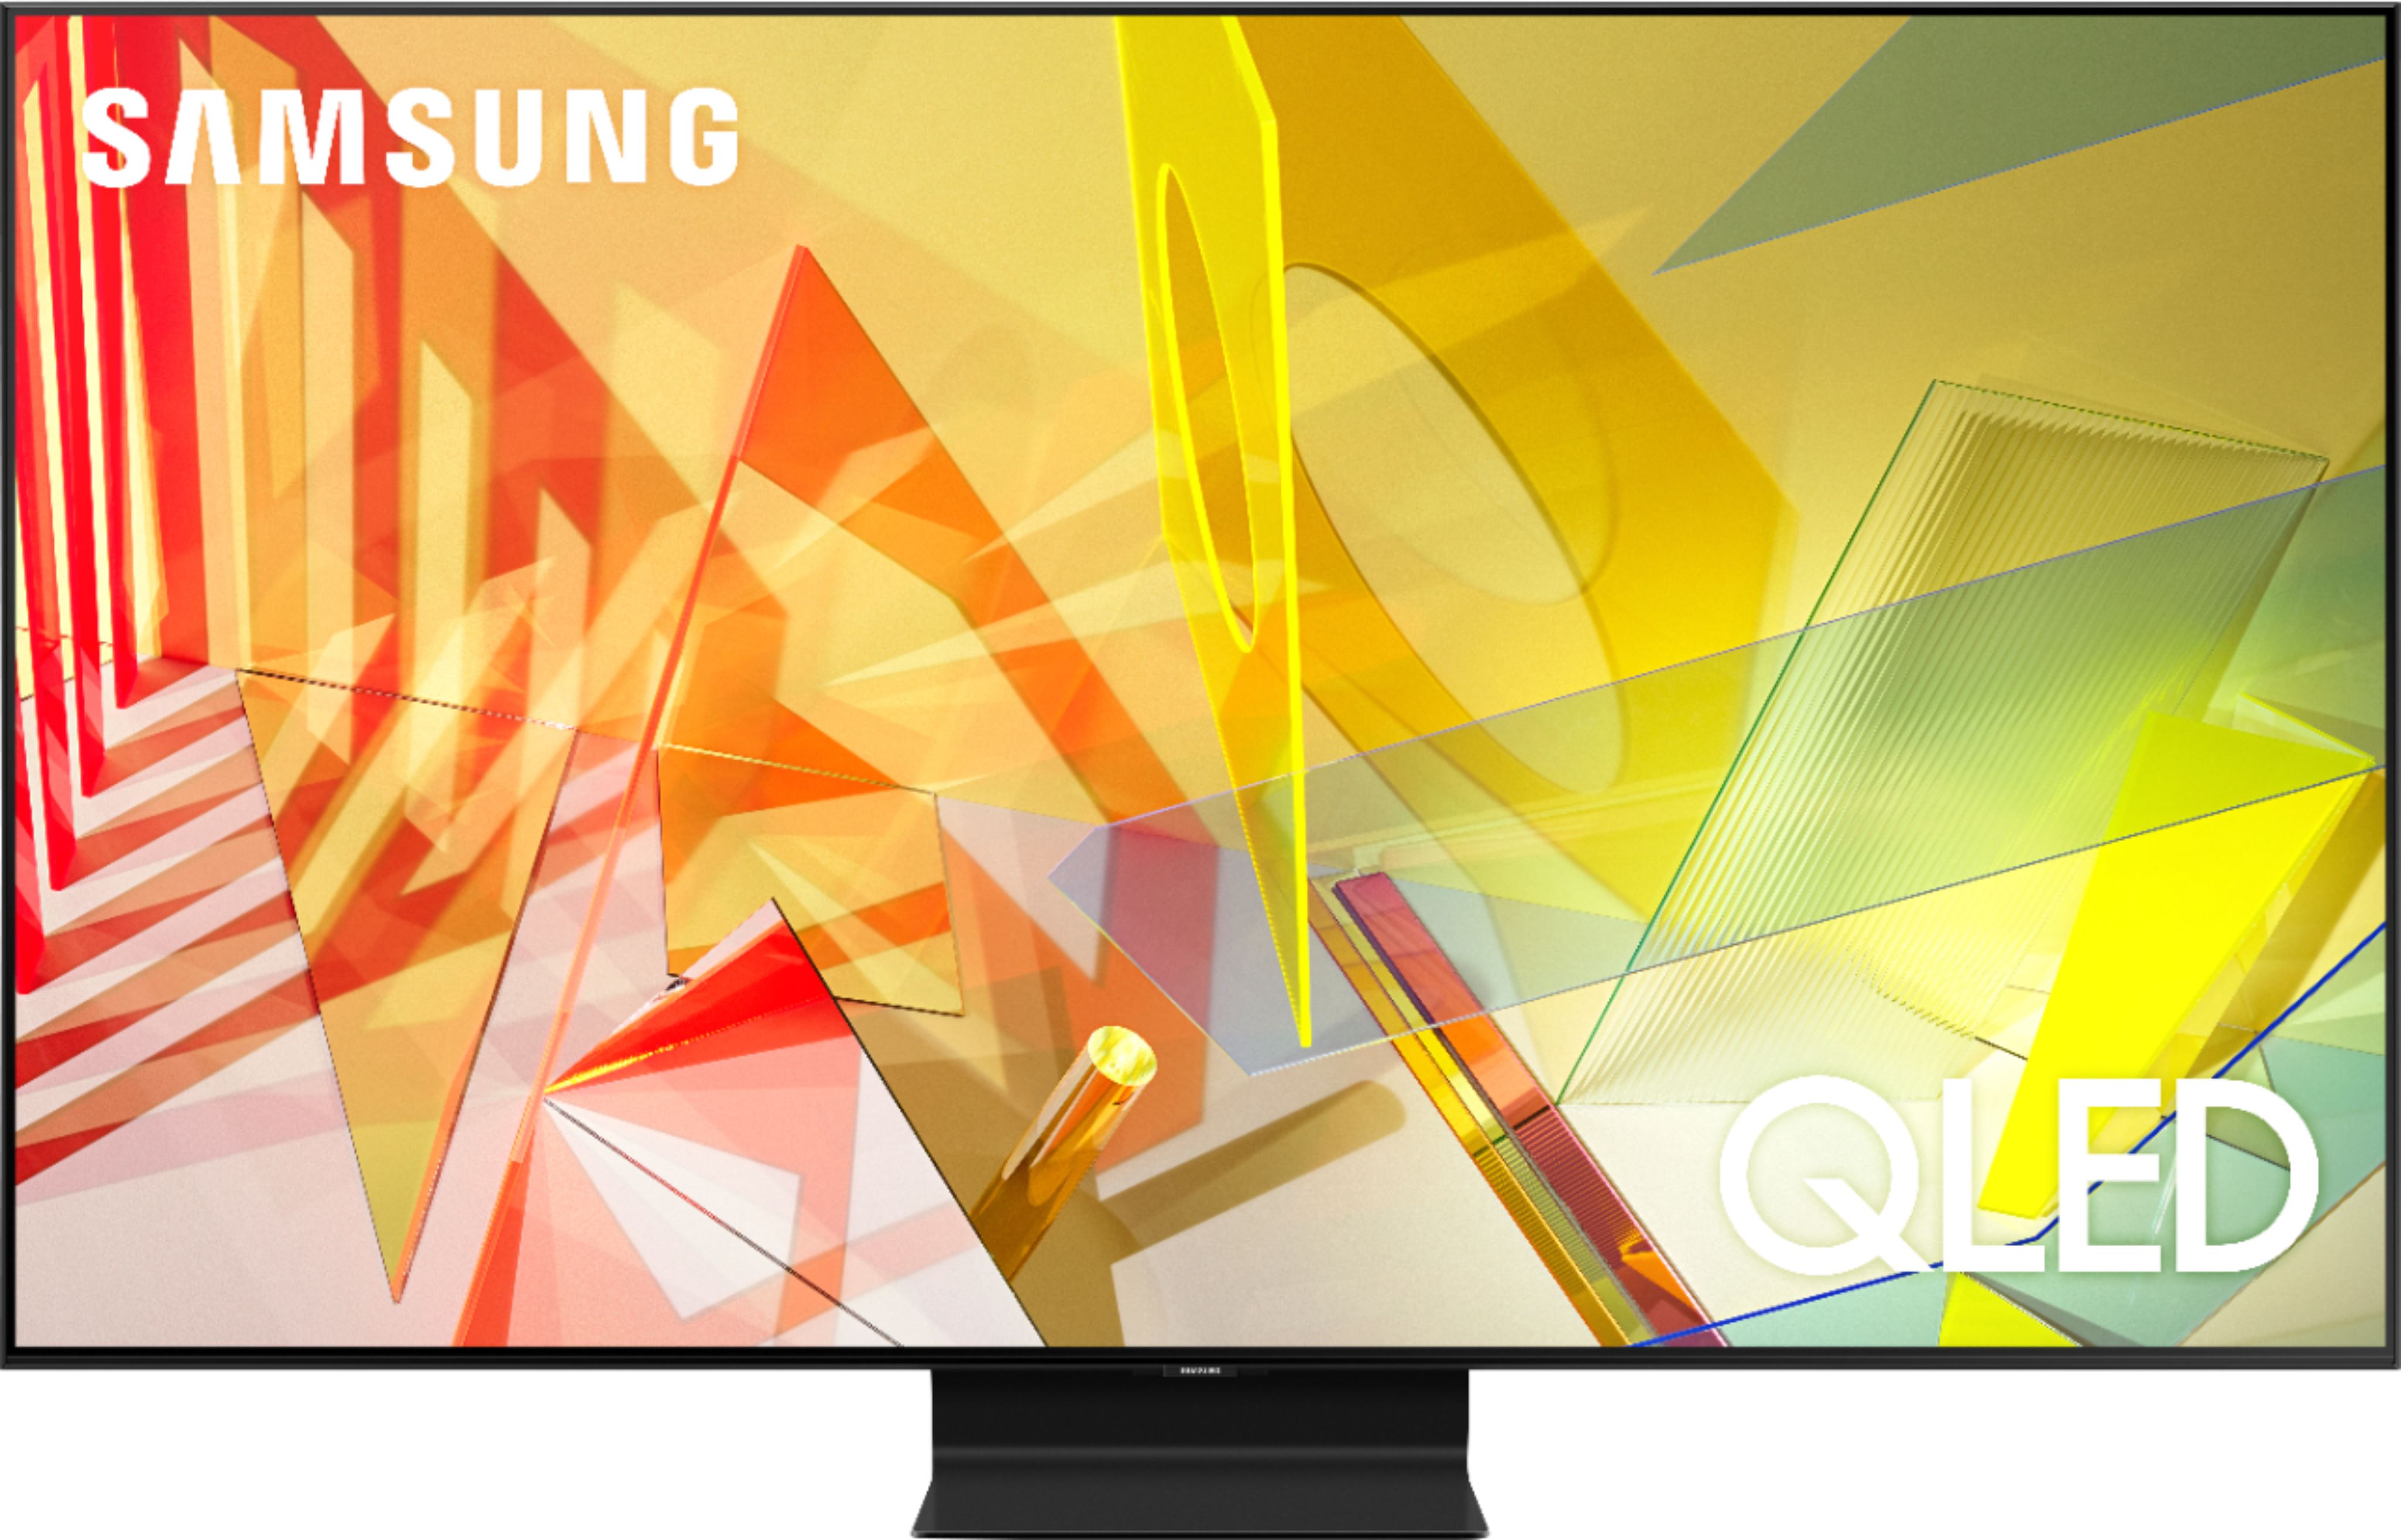 Samsung - Televisor inteligente Tizen QLED 4K UHD de la serie Q90T de 55 